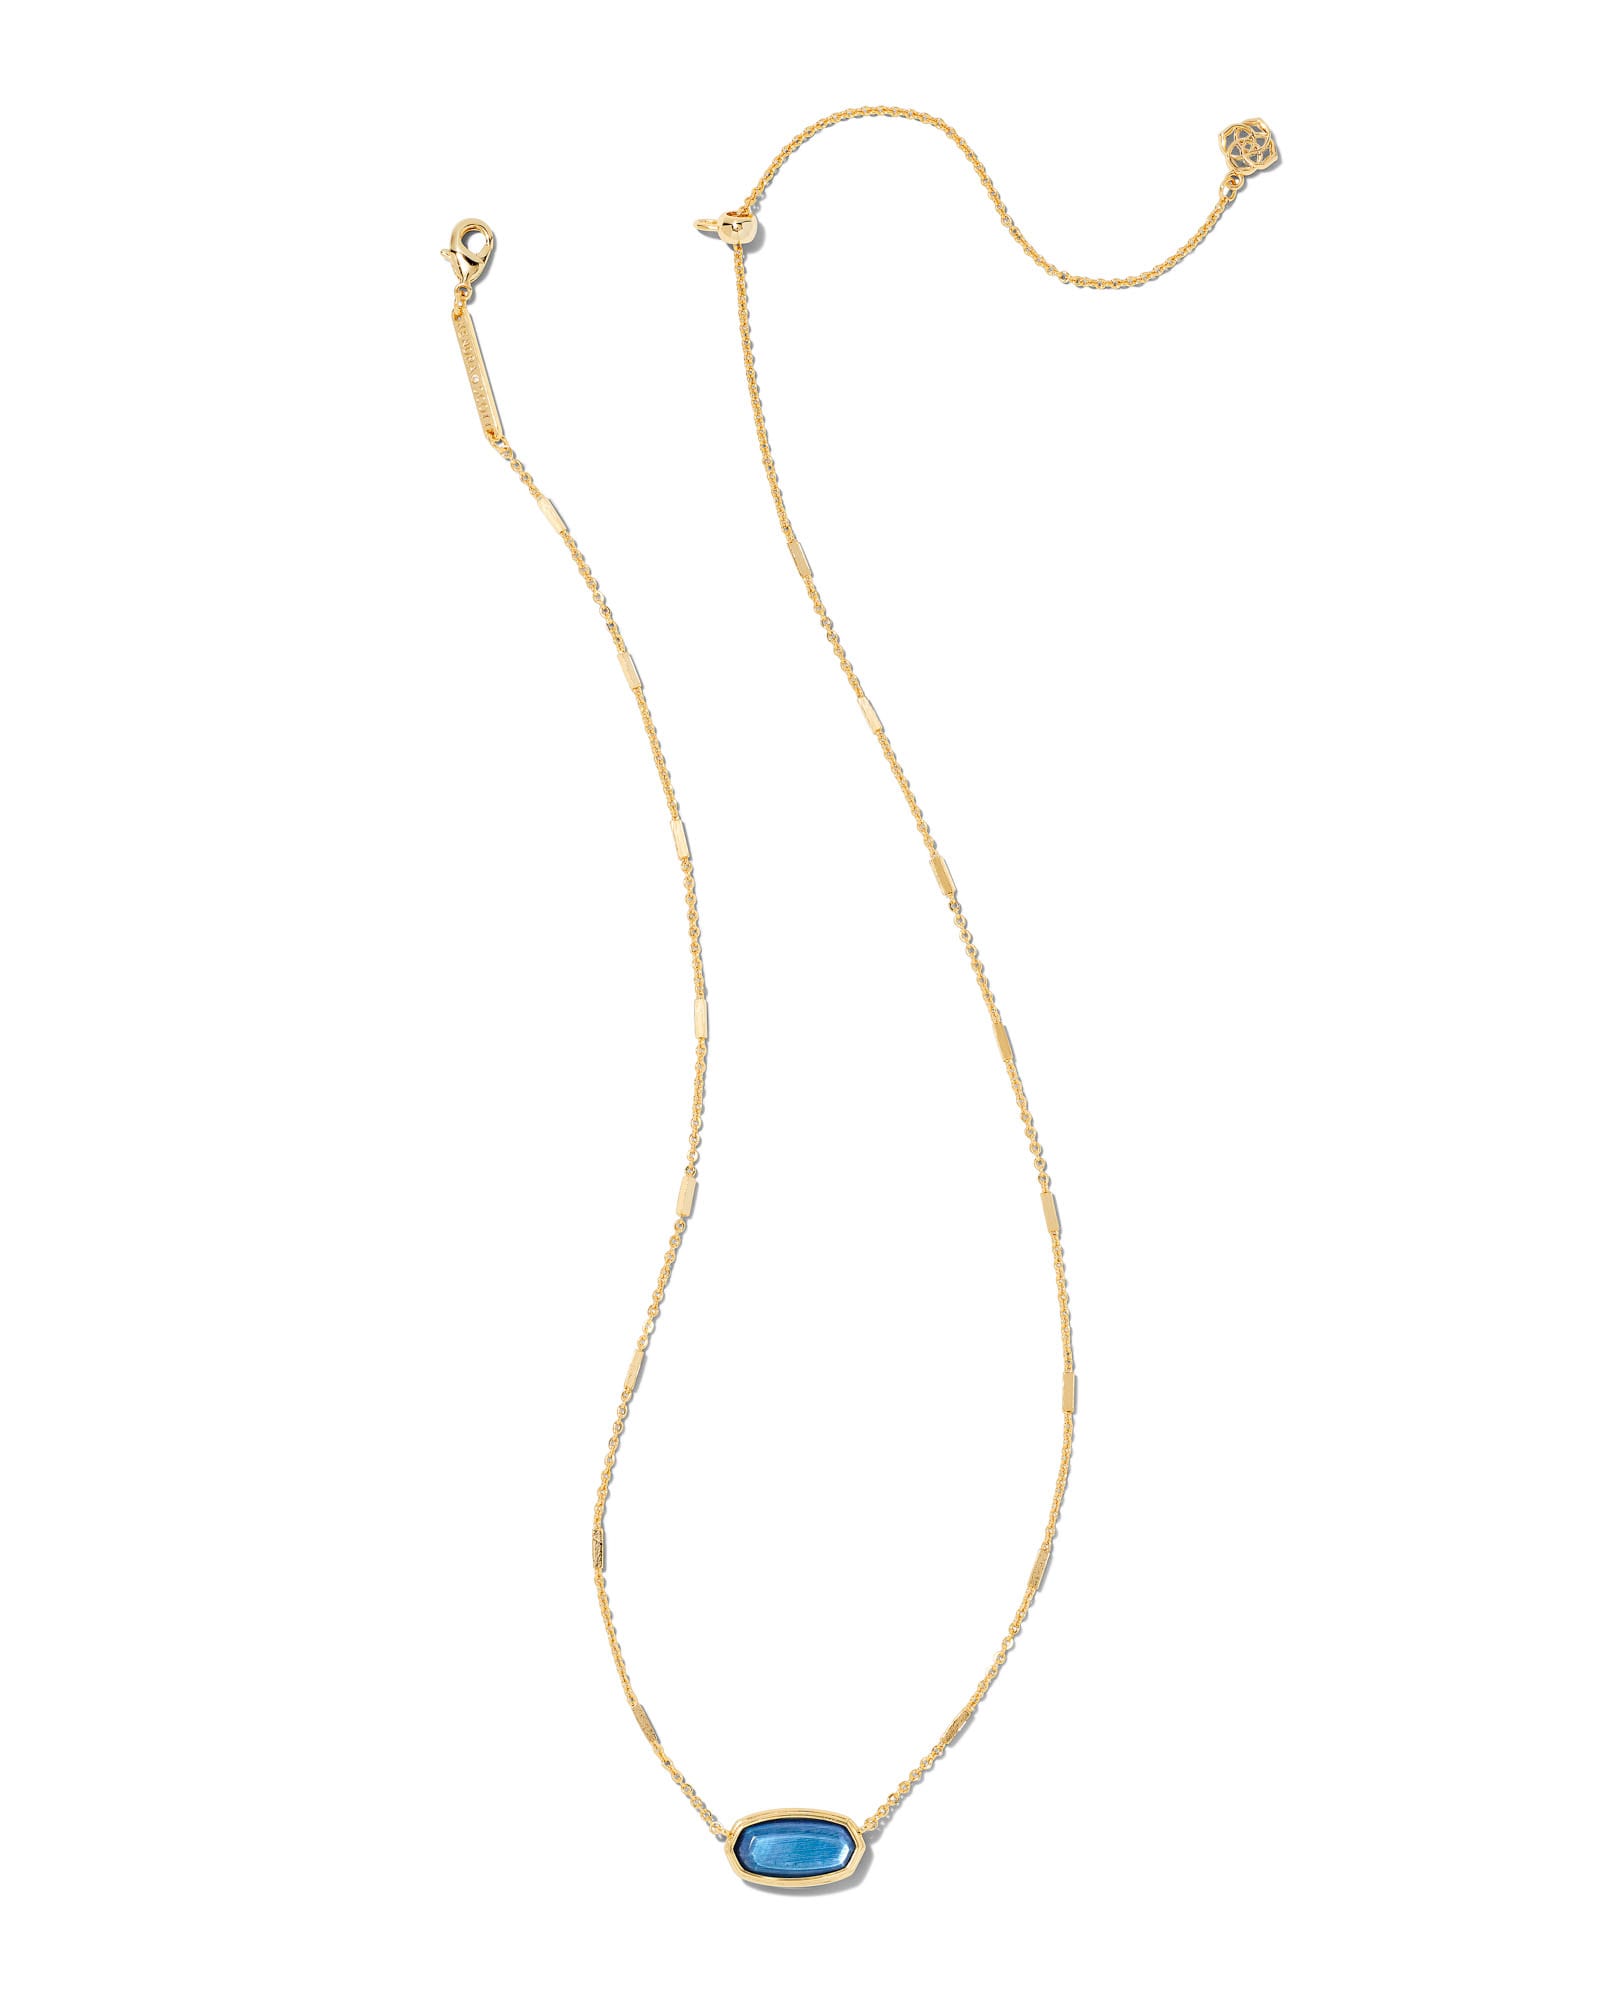 Framed Elisa Gold Short Pendant Necklace in Dark Blue Mother-of-Pearl